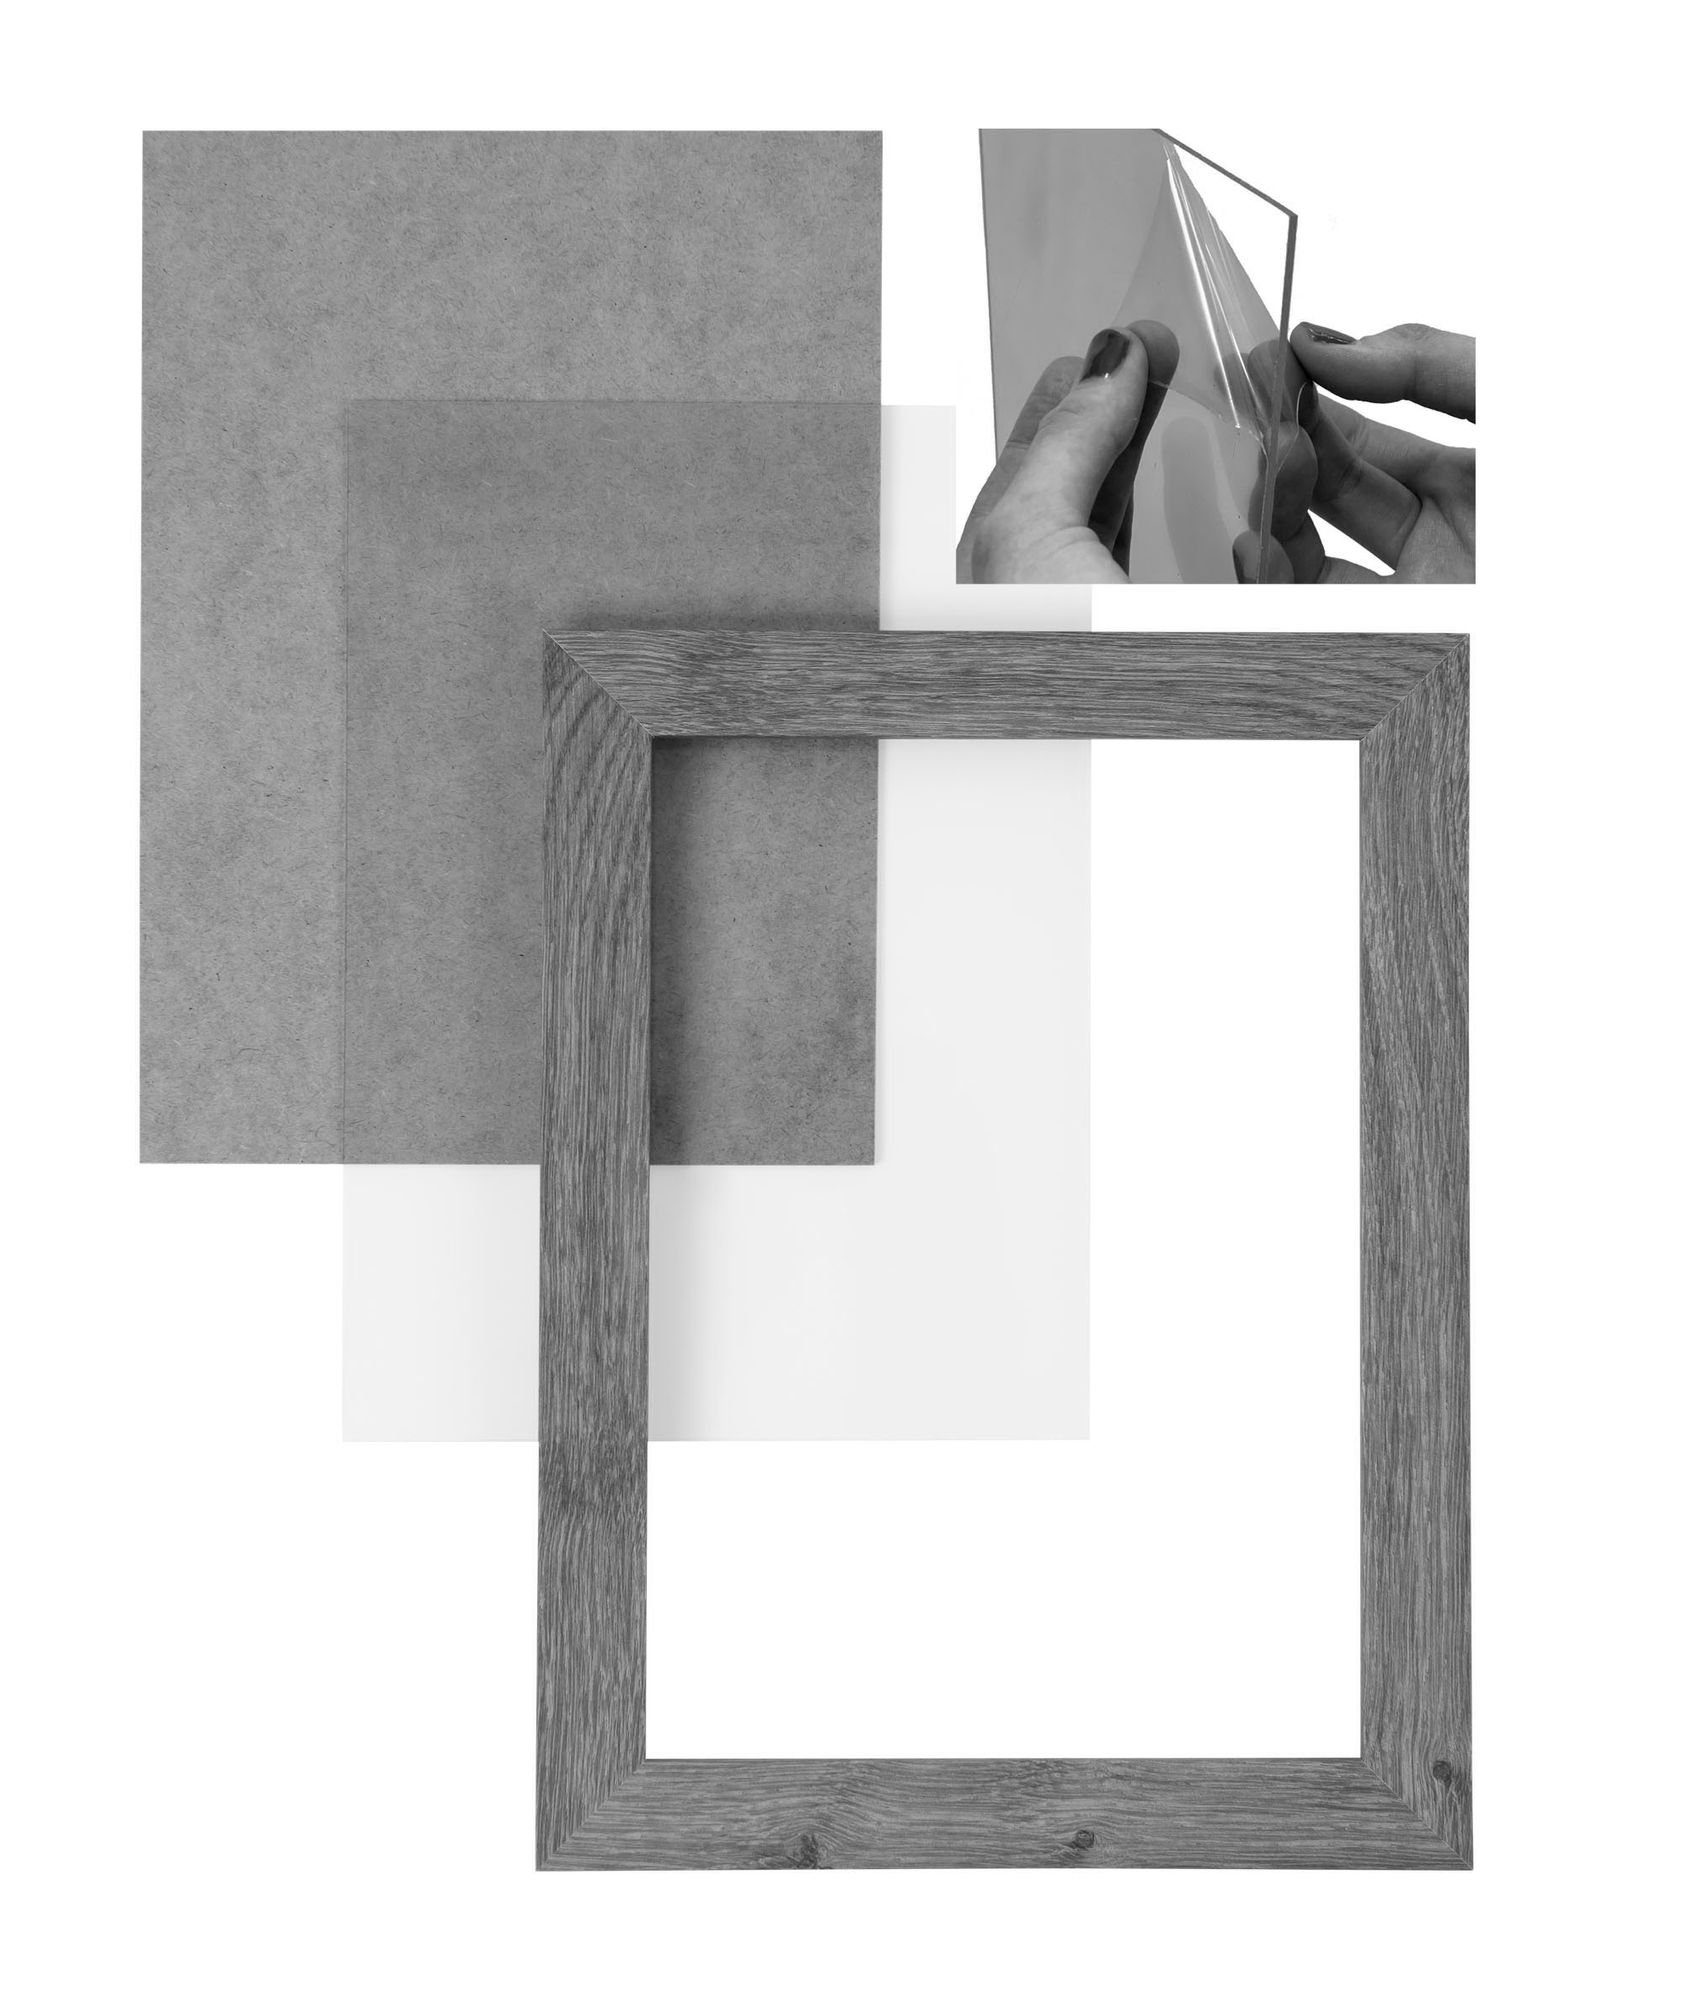 Aufhänger vintage inkl. 'Collage' Maß CLAMARO weiss Rahmen und Holz Bilderrahmen nach Acrylglas, FSC® MDF Bilderrahmen handgefertigt Moderner eckiger 49x68 Rückwand in Clamaro